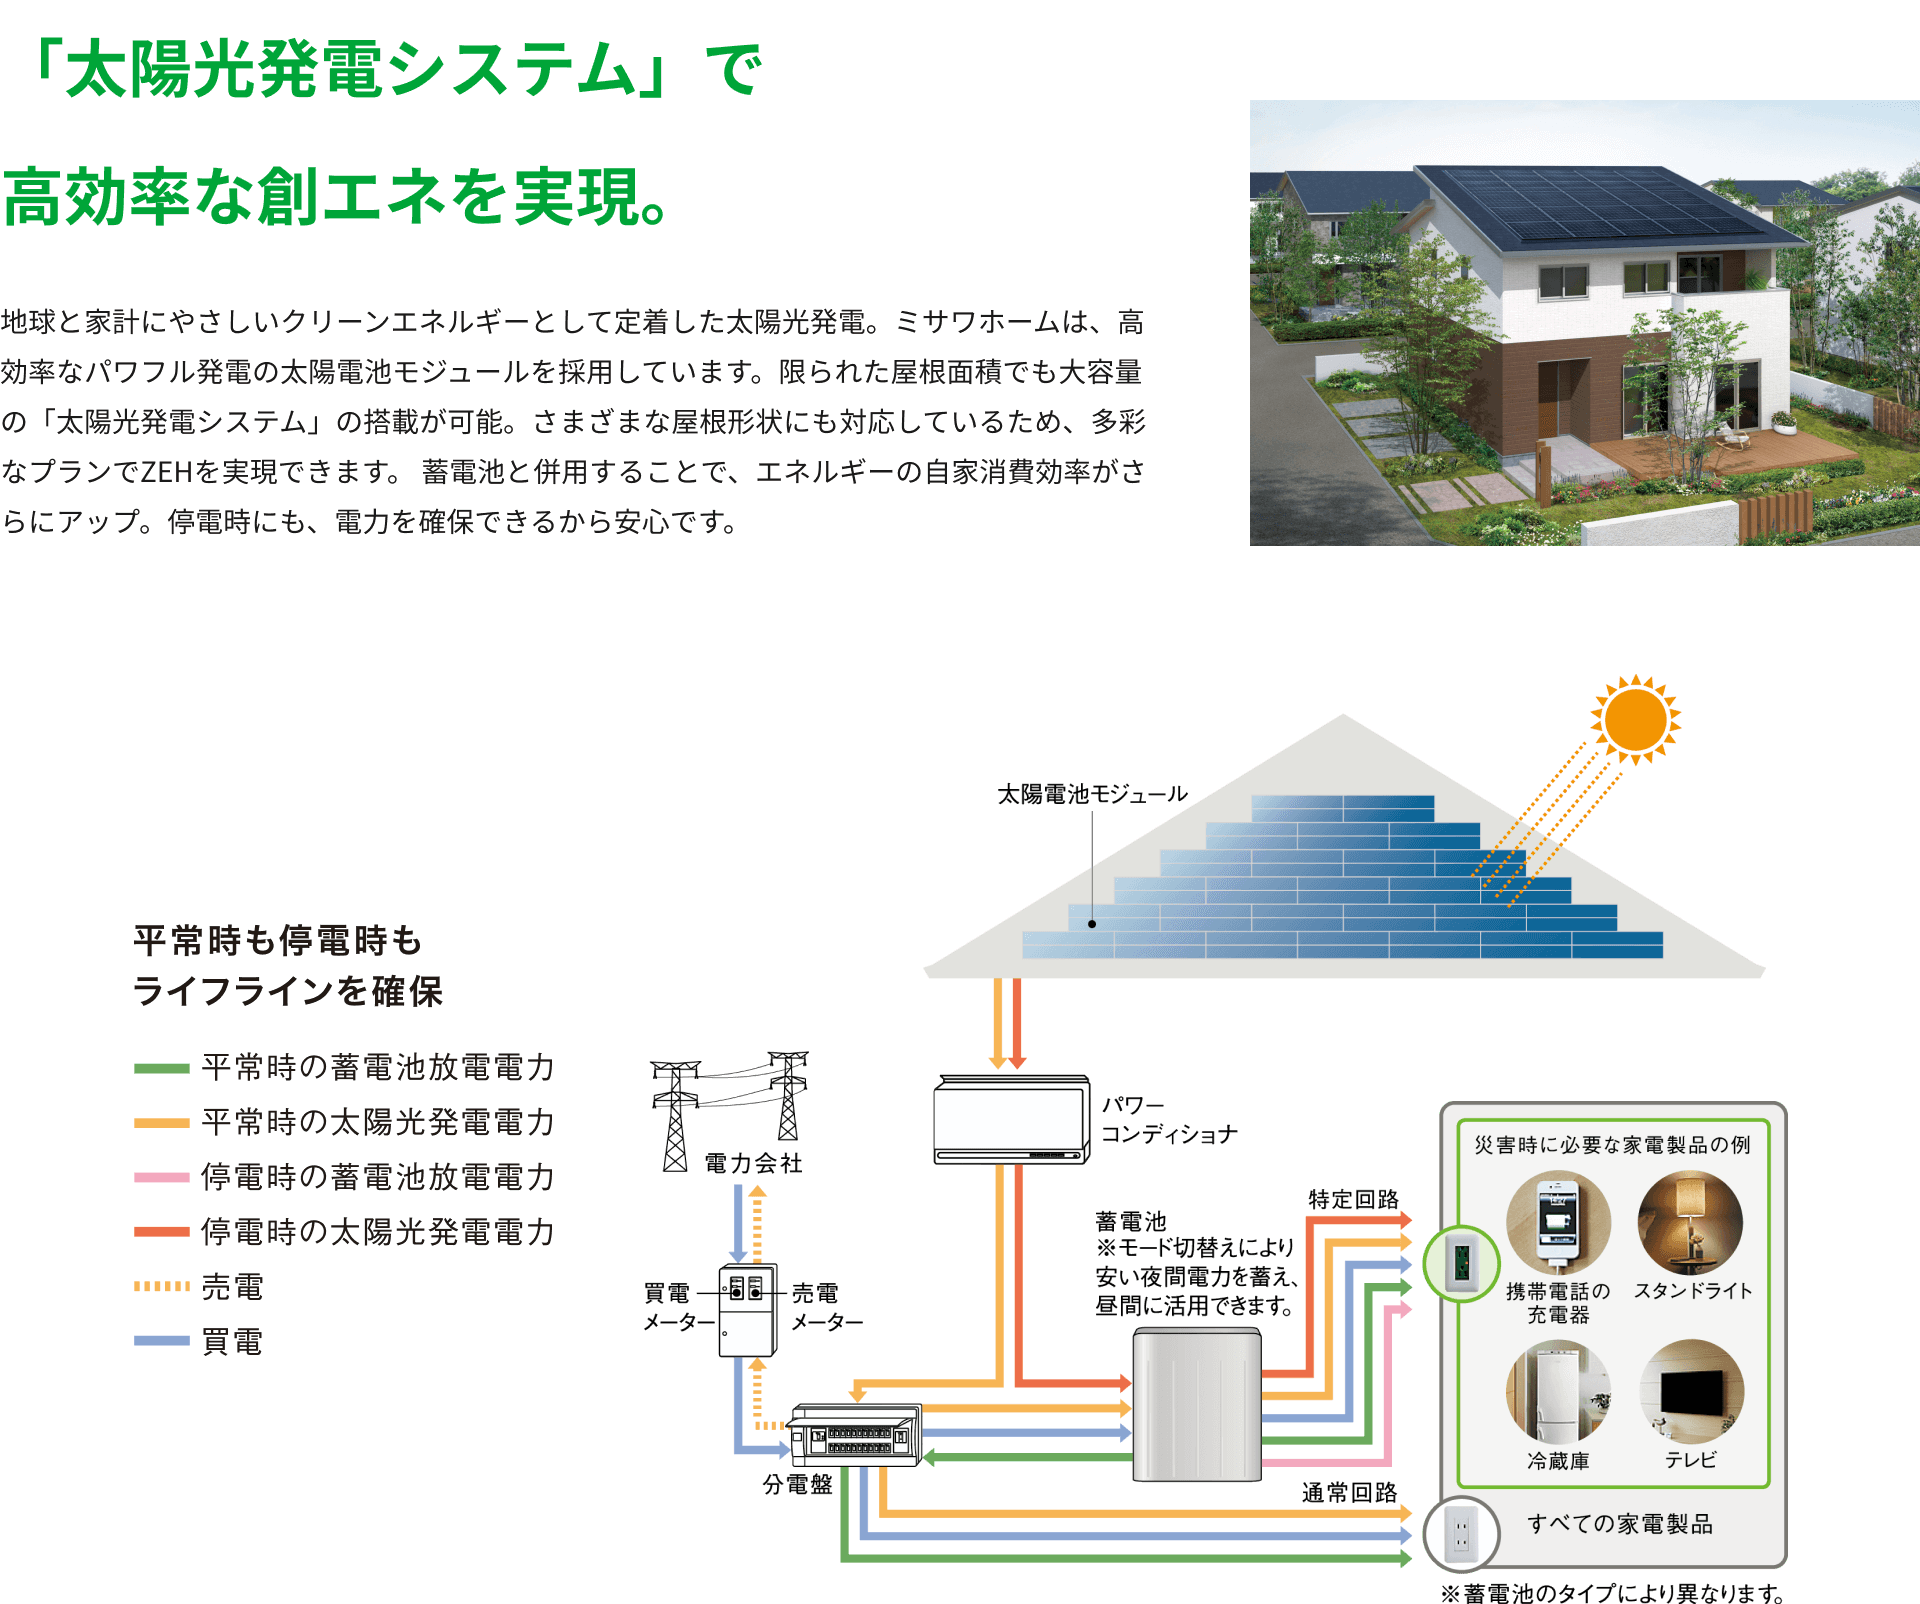 「太陽光発電システム」で高効率な創エネを実現。 地球と家計にやさしいクリーンエネルギーとして定着した太陽光発電。ミサワホームは、高効率なパワフル発電の太陽電池モジュールを採用しています。限られた屋根面積でも大容量の「太陽光発電システム」の搭載が可能。さまざまな屋根形状にも対応しているため、多彩なプランでZEHを実現できます。蓄電池と併用することで、エネルギーの自家消費効率がさらにアップ。停電時にも、電力を確保できるから安心です。